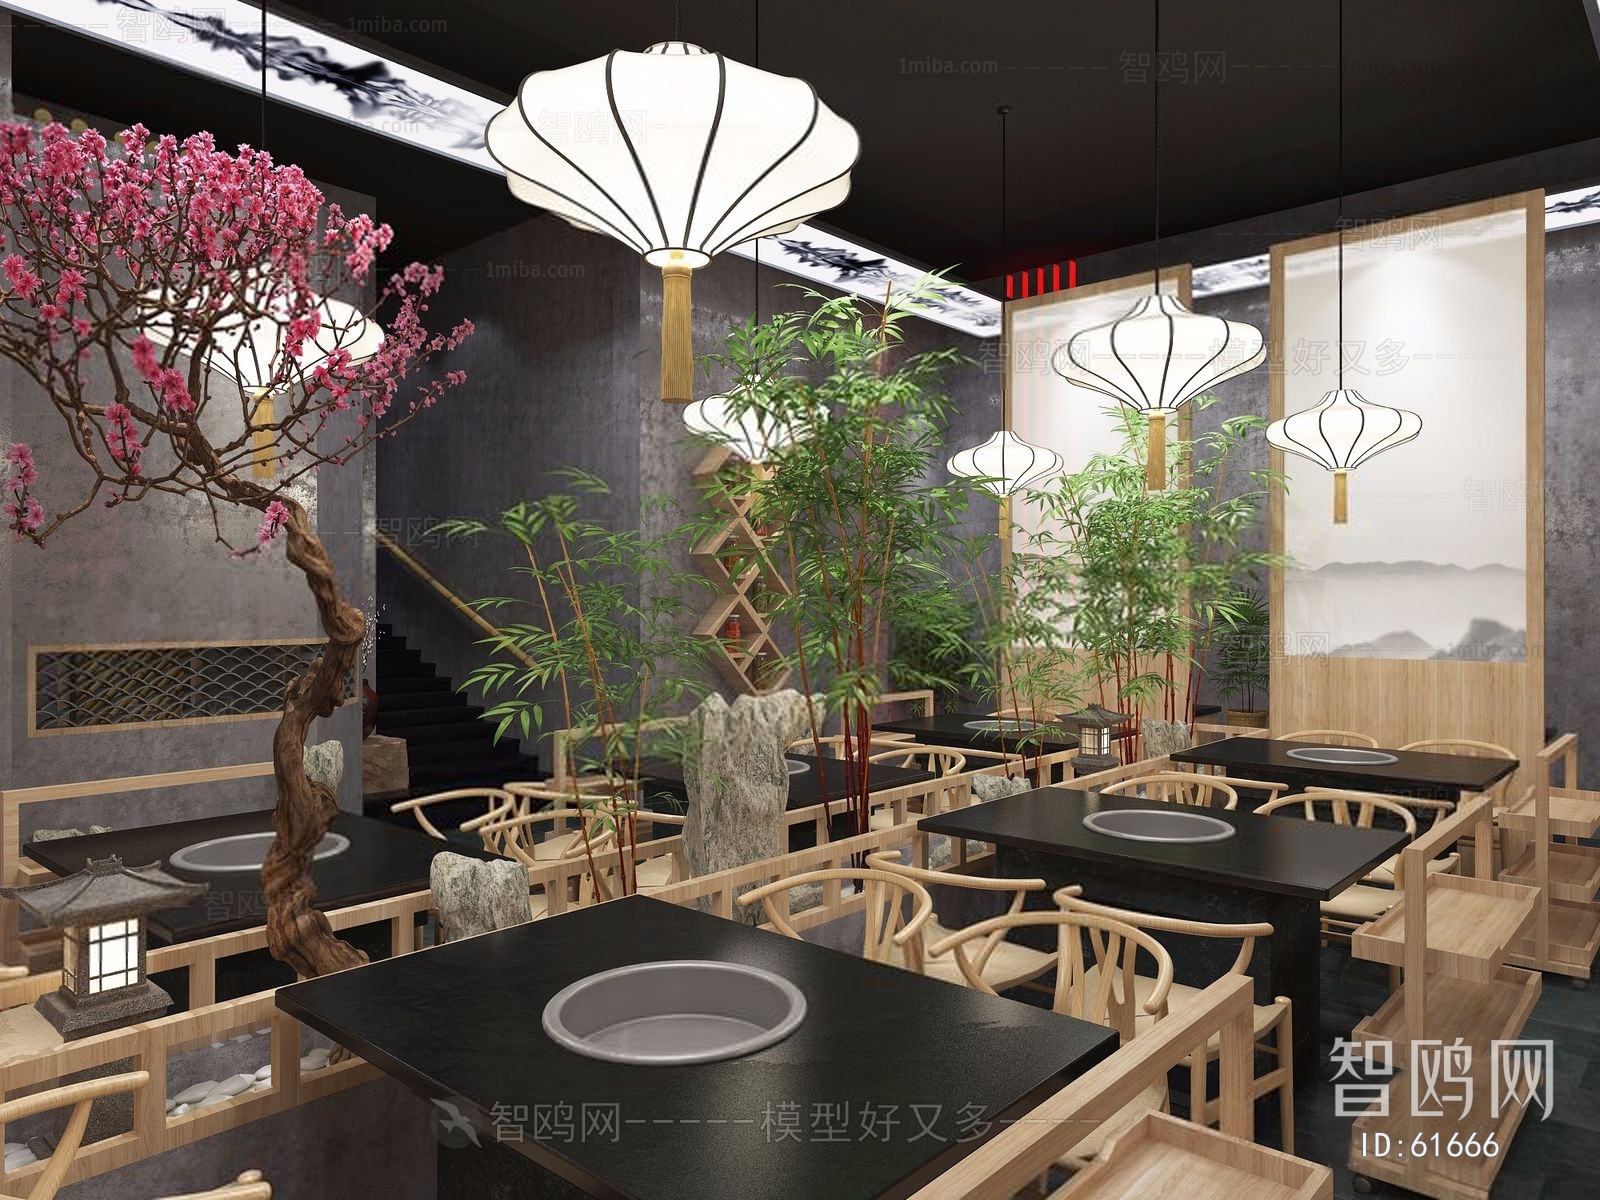 新中式餐厅火锅店